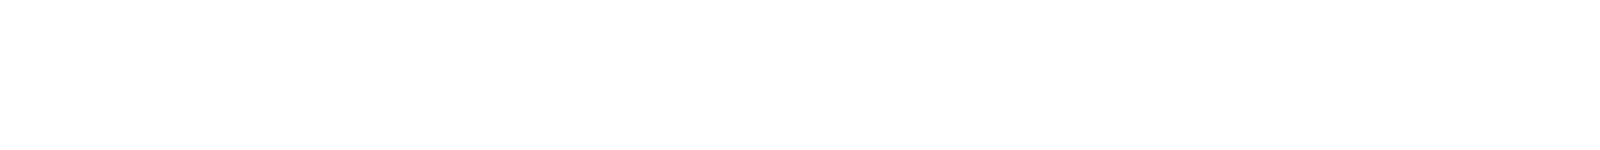 Little-Butt-Kind-Logo-White